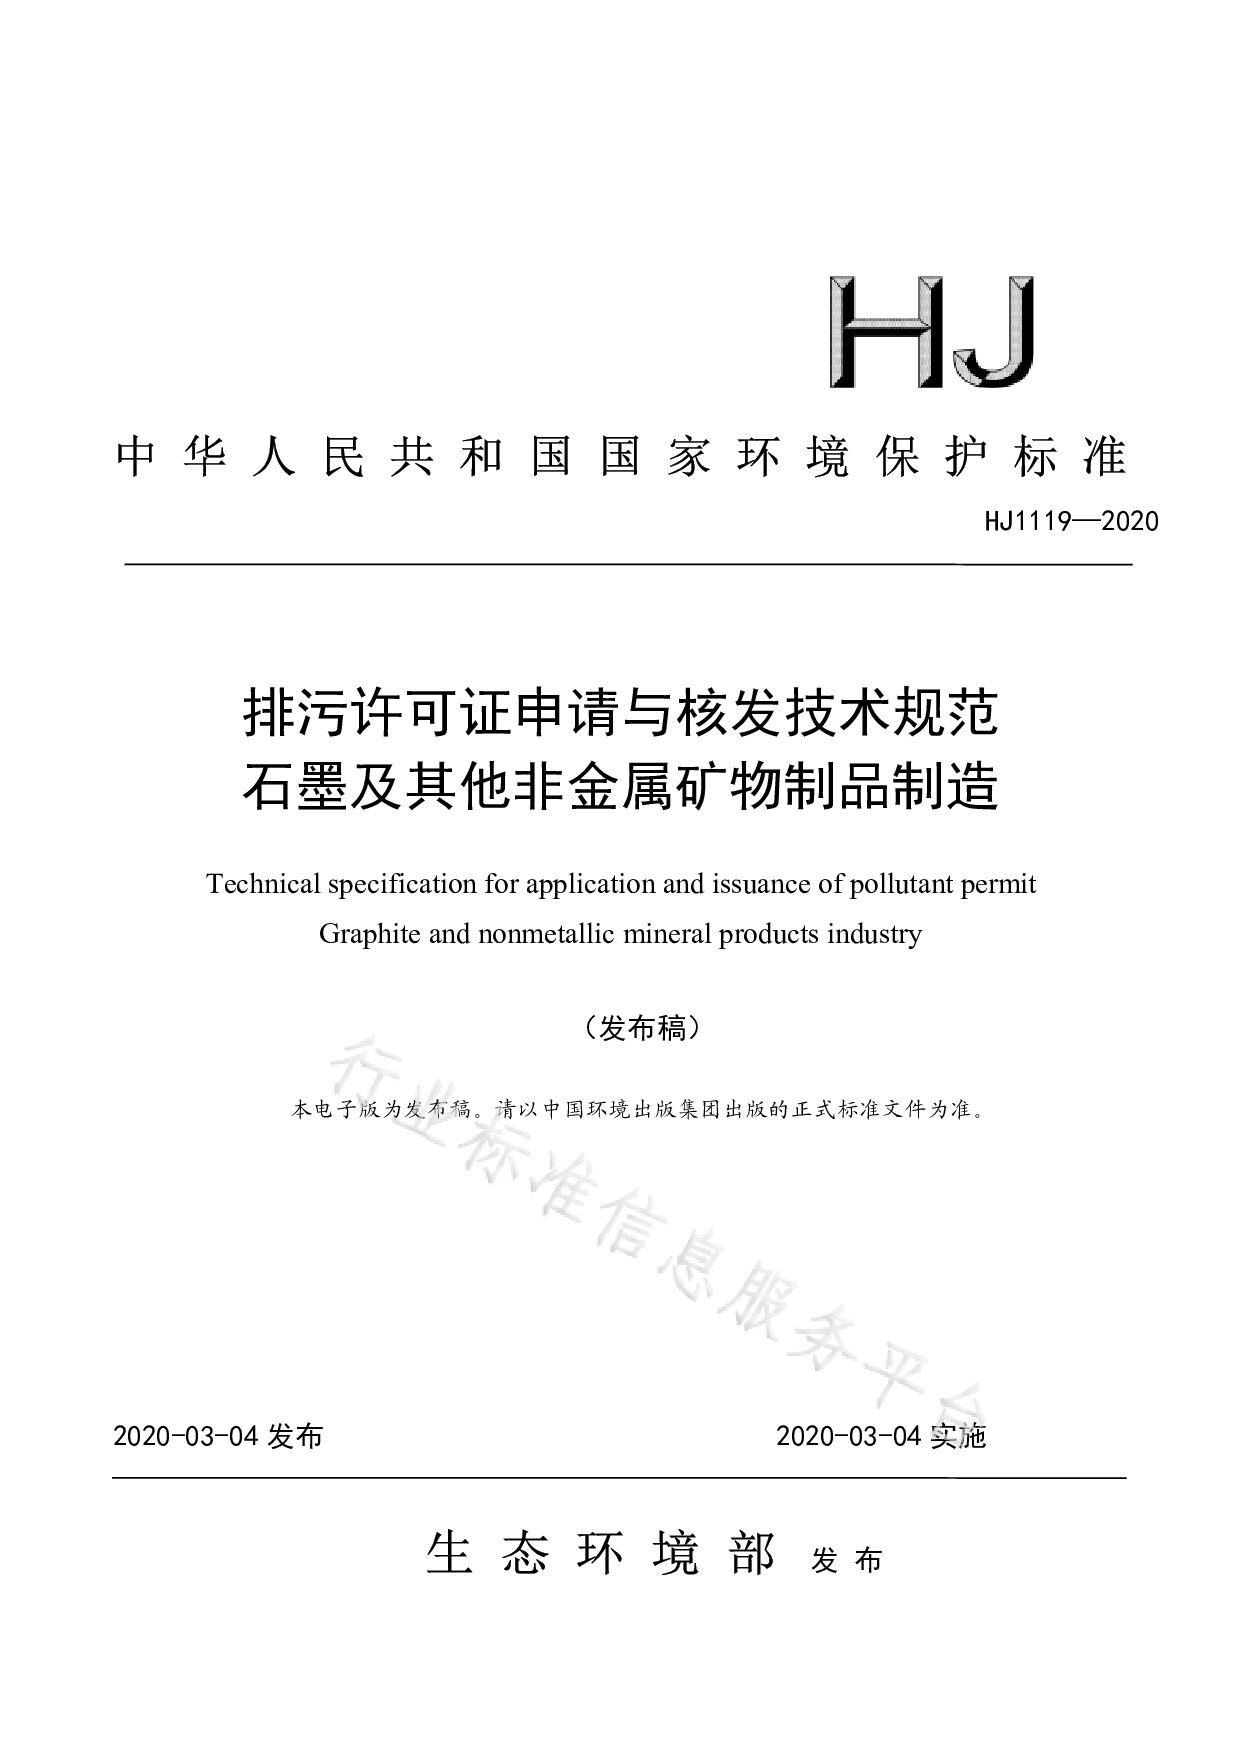 HJ 1119-2020封面图